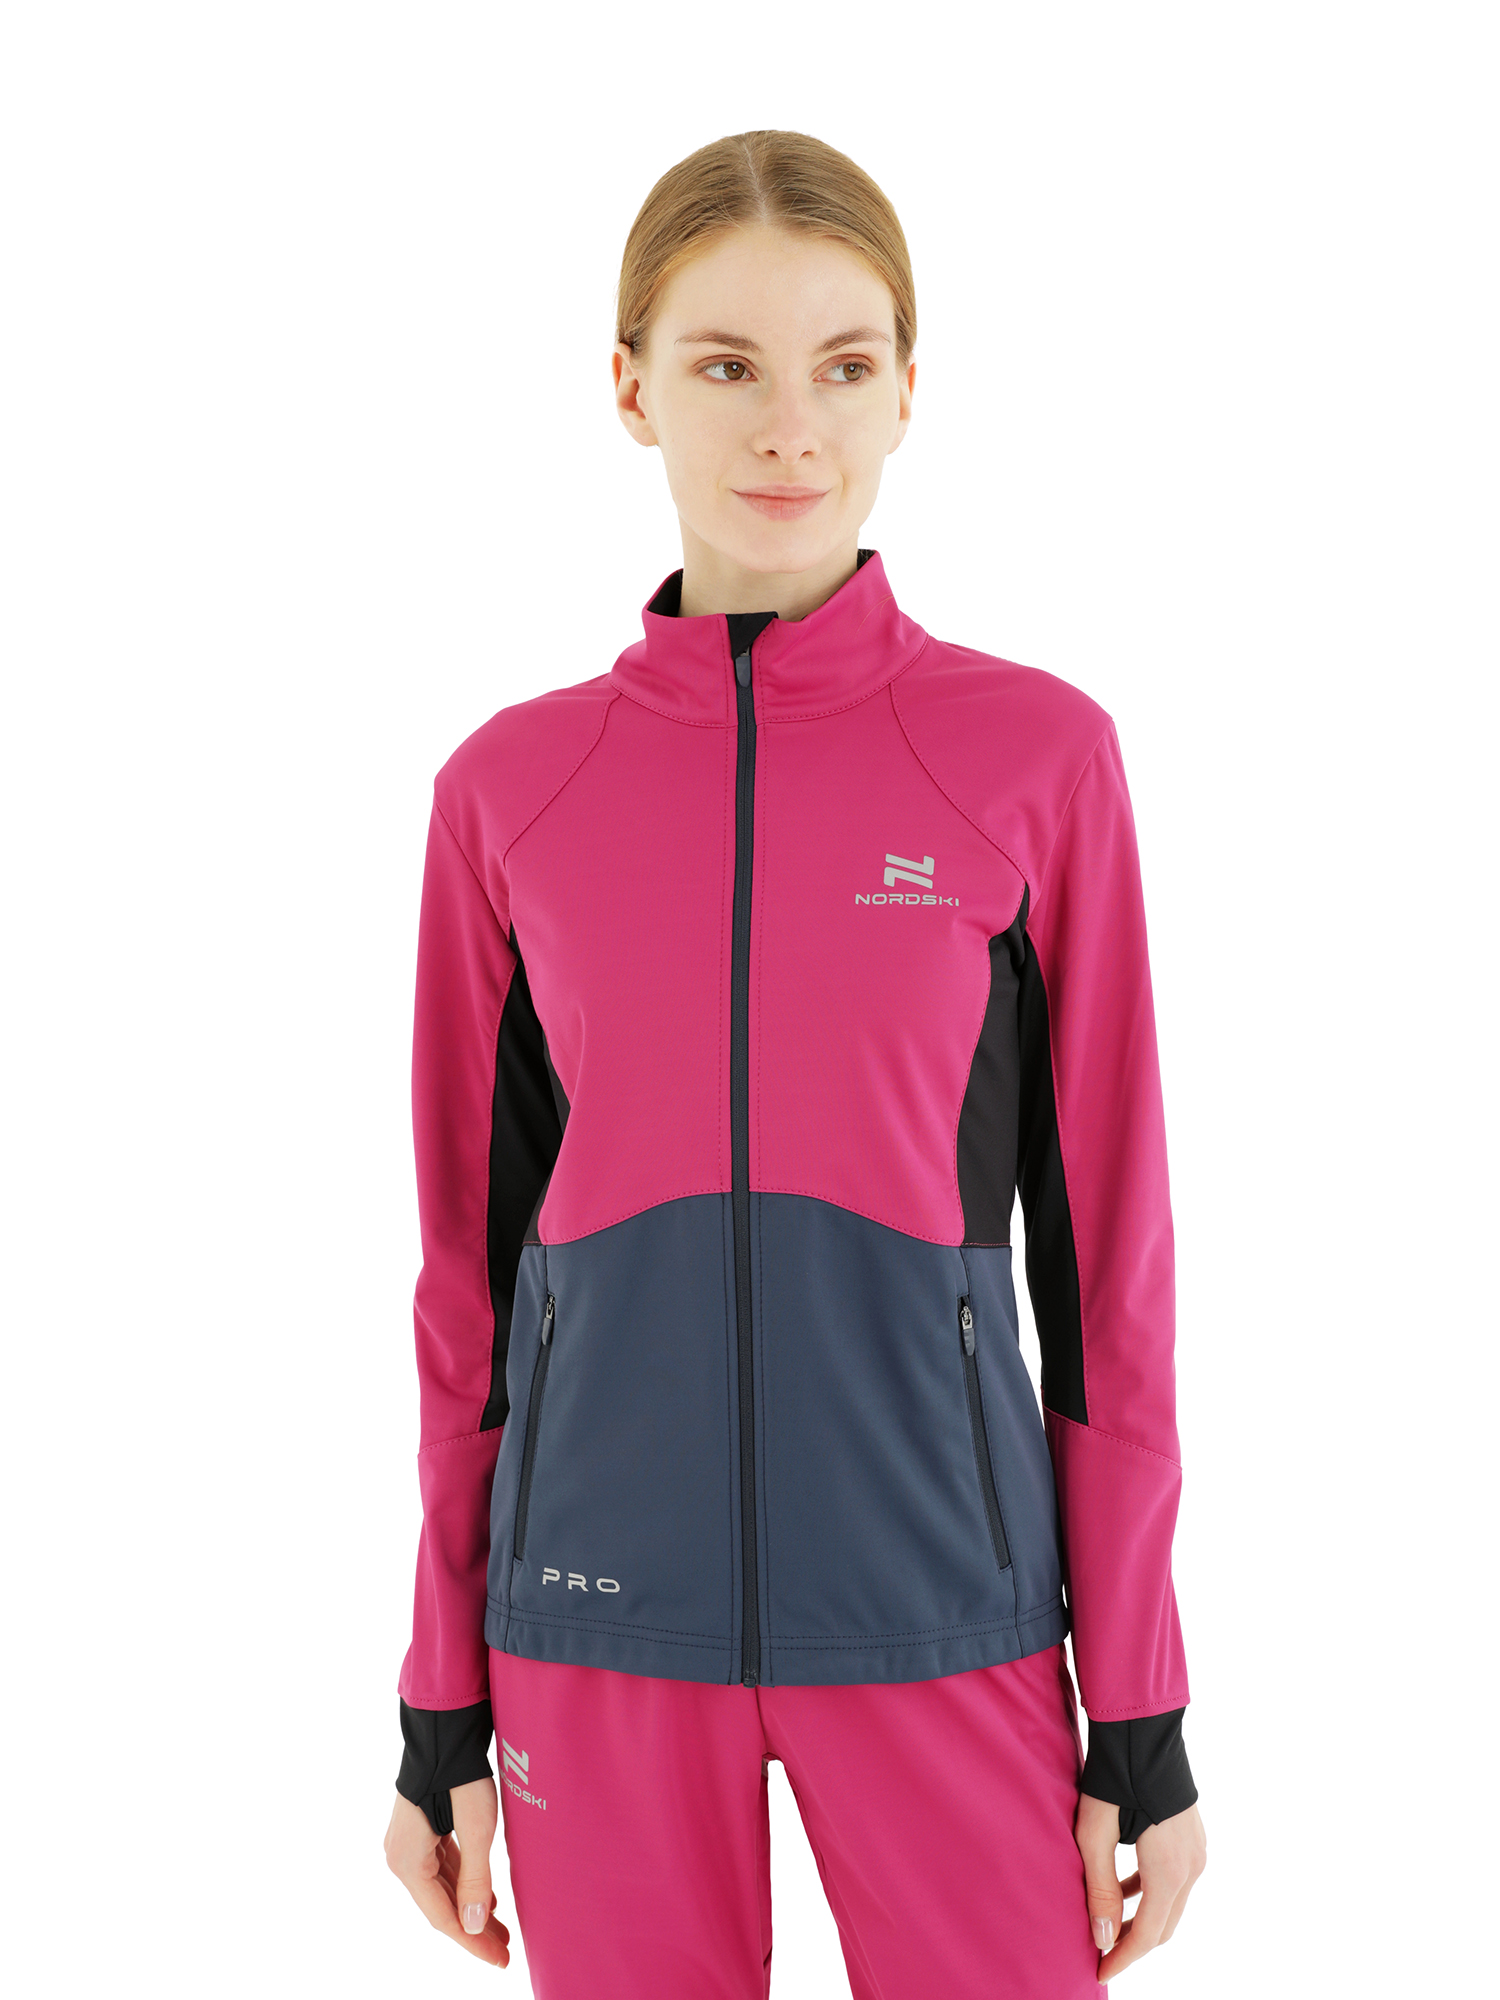 Спортивная куртка женская NordSki Pro W розовая XS